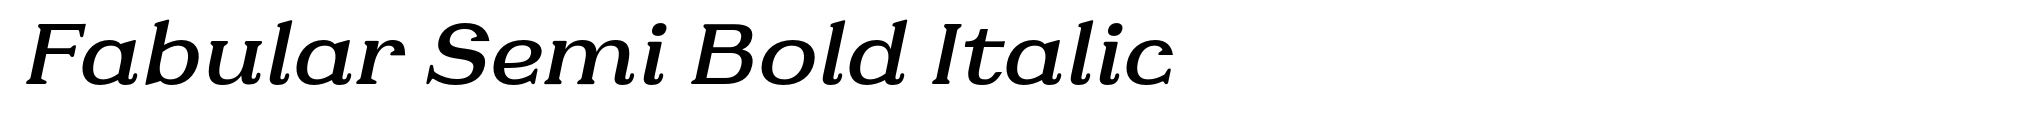 Fabular Semi Bold Italic image